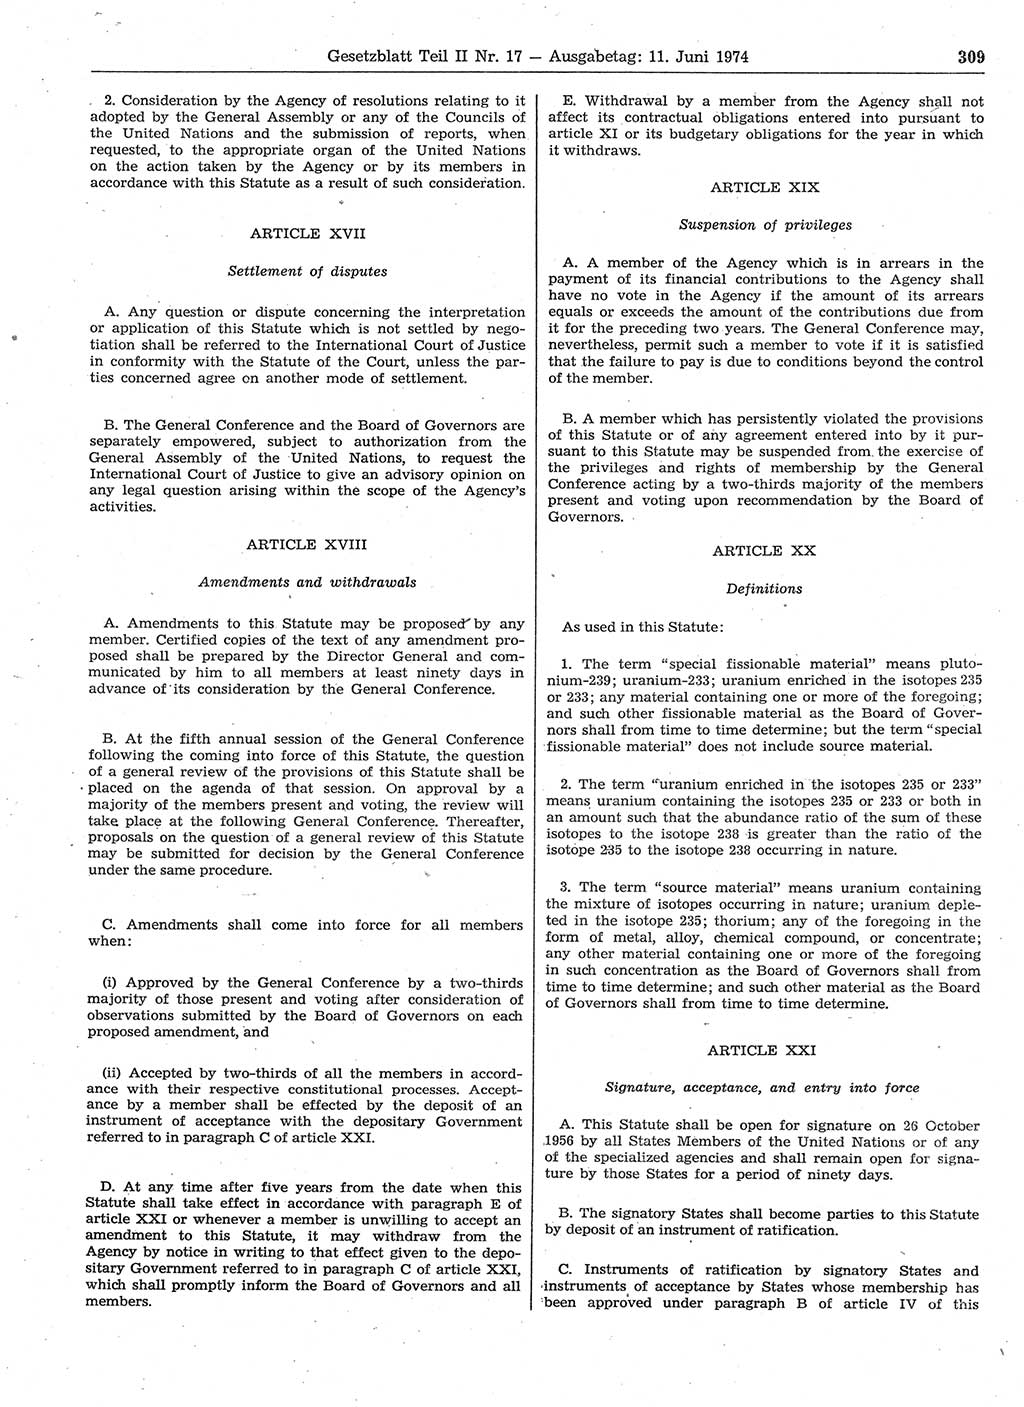 Gesetzblatt (GBl.) der Deutschen Demokratischen Republik (DDR) Teil ⅠⅠ 1974, Seite 309 (GBl. DDR ⅠⅠ 1974, S. 309)